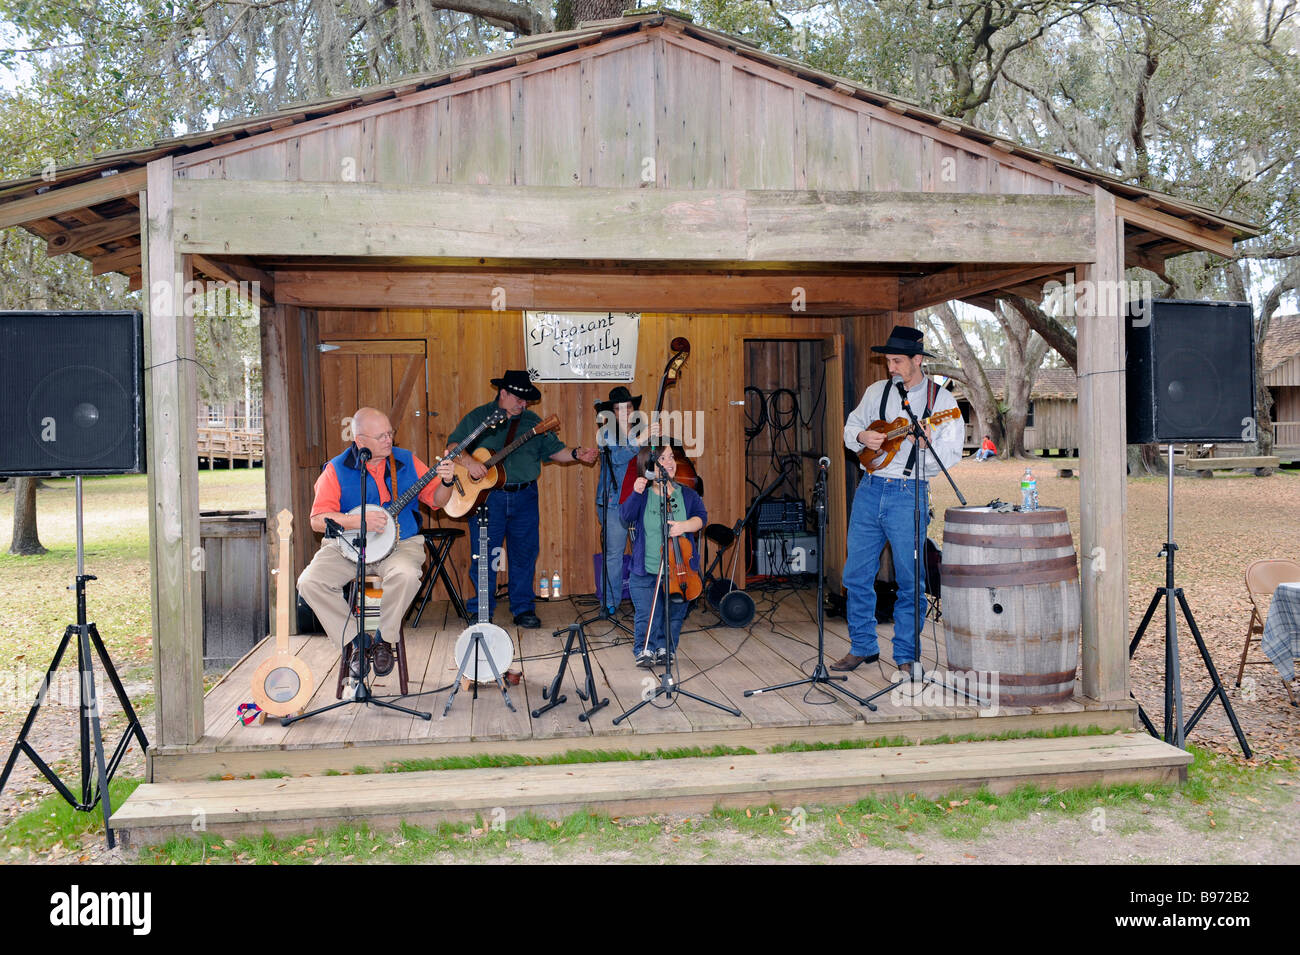 Piacevole Paese Famiglia Band suona al Cracker Florida paese museo vivente di storia situato sulla Florida State Fairgrounds Foto Stock